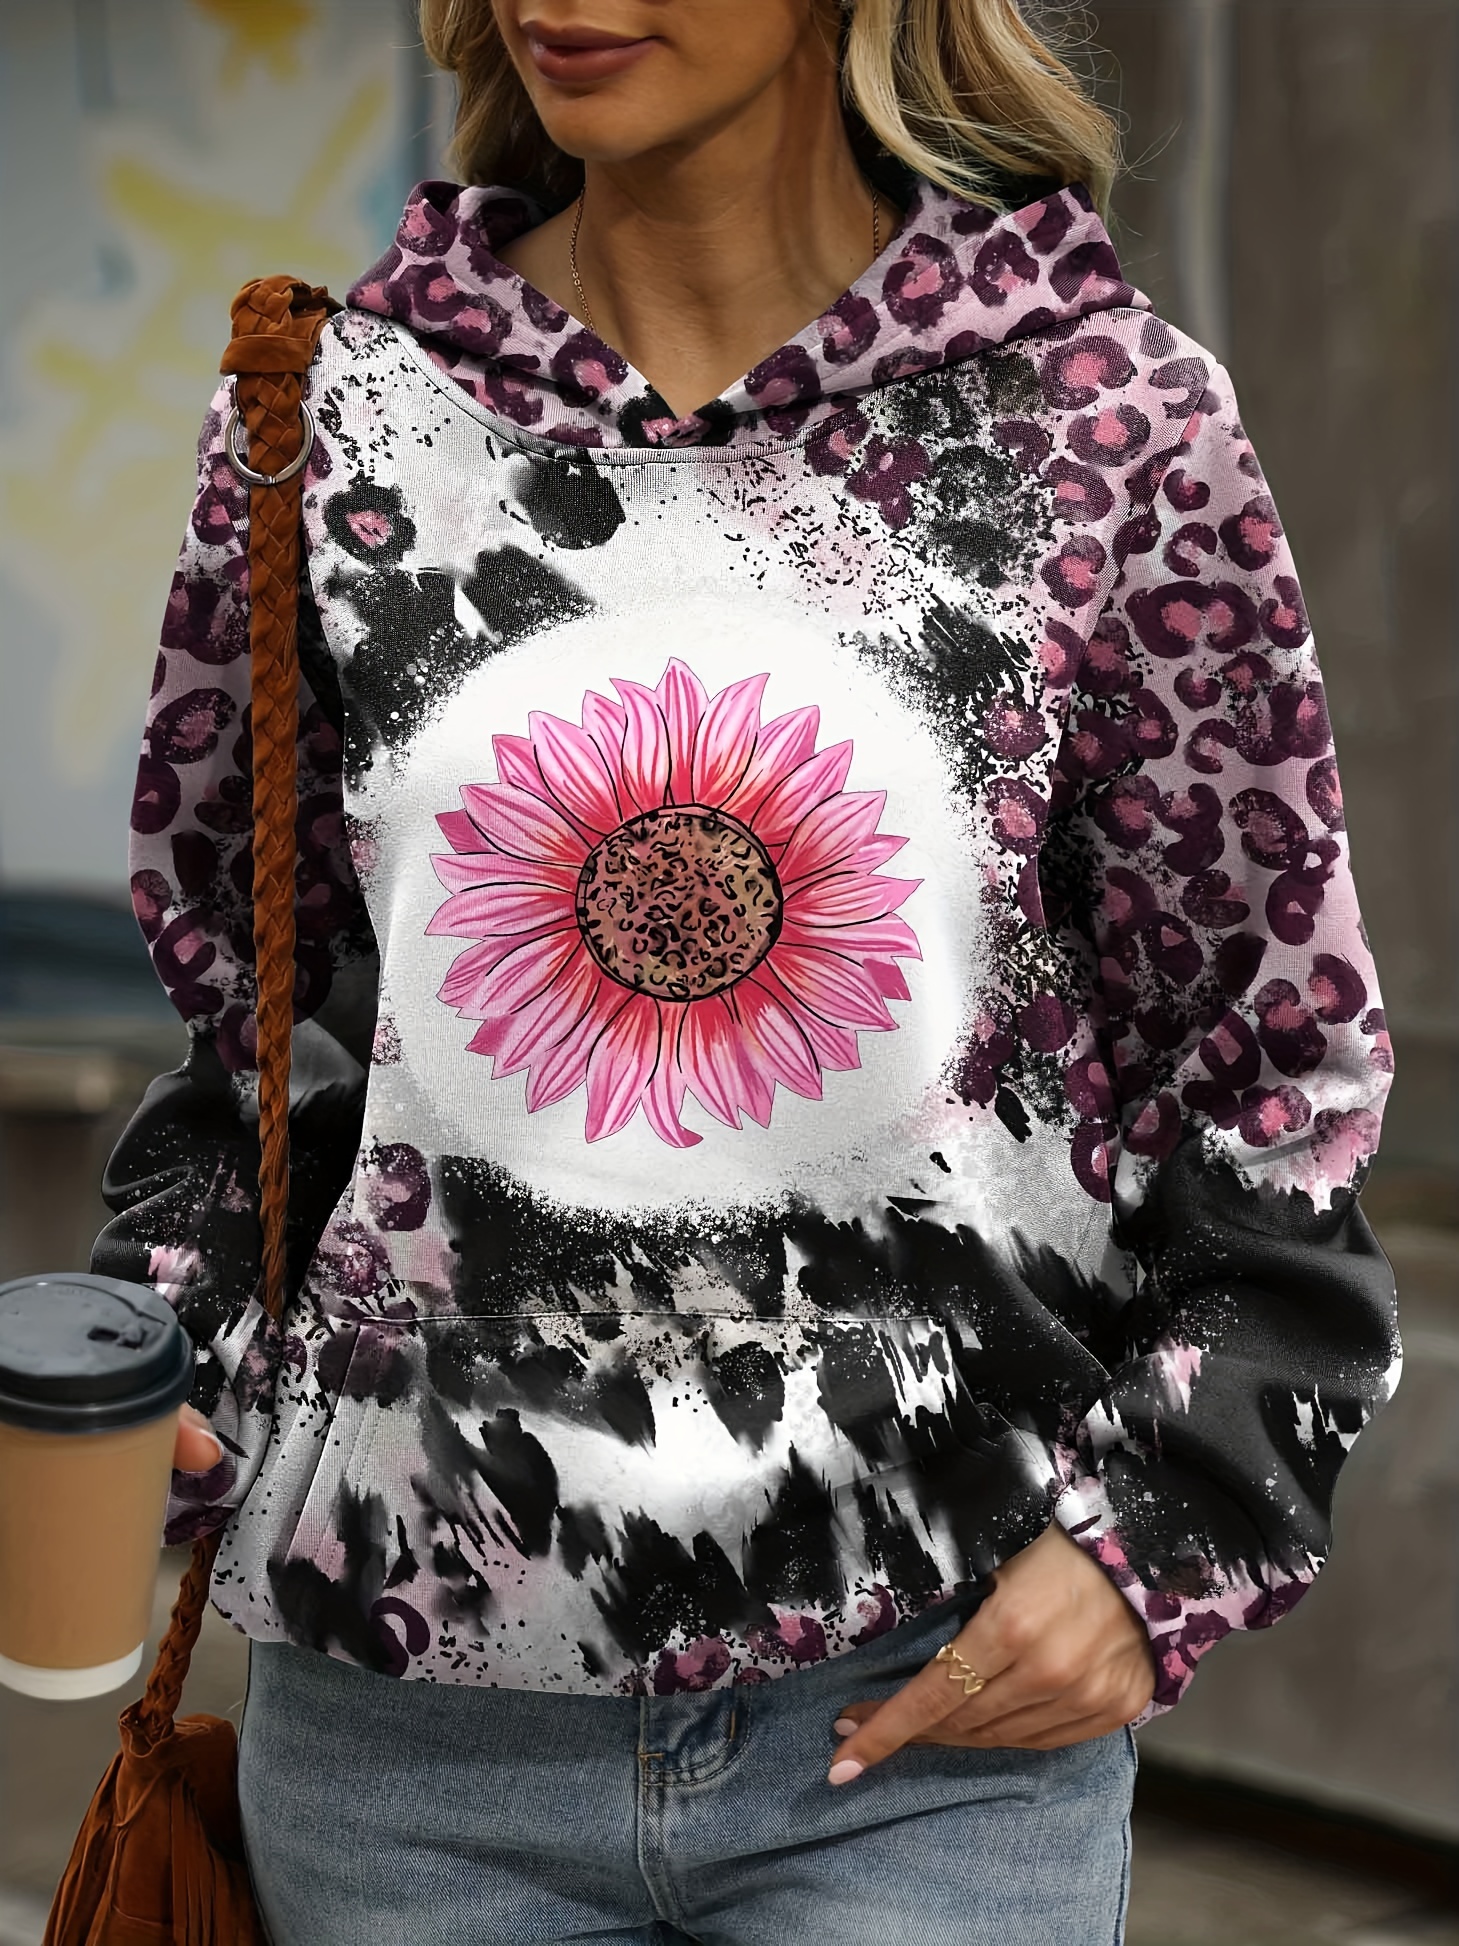 Leopard & Floral Print Kangaroo Pocket Hoodie, Casual Long Sleeve Hoodies  Sweatshirt, Women's Clothing